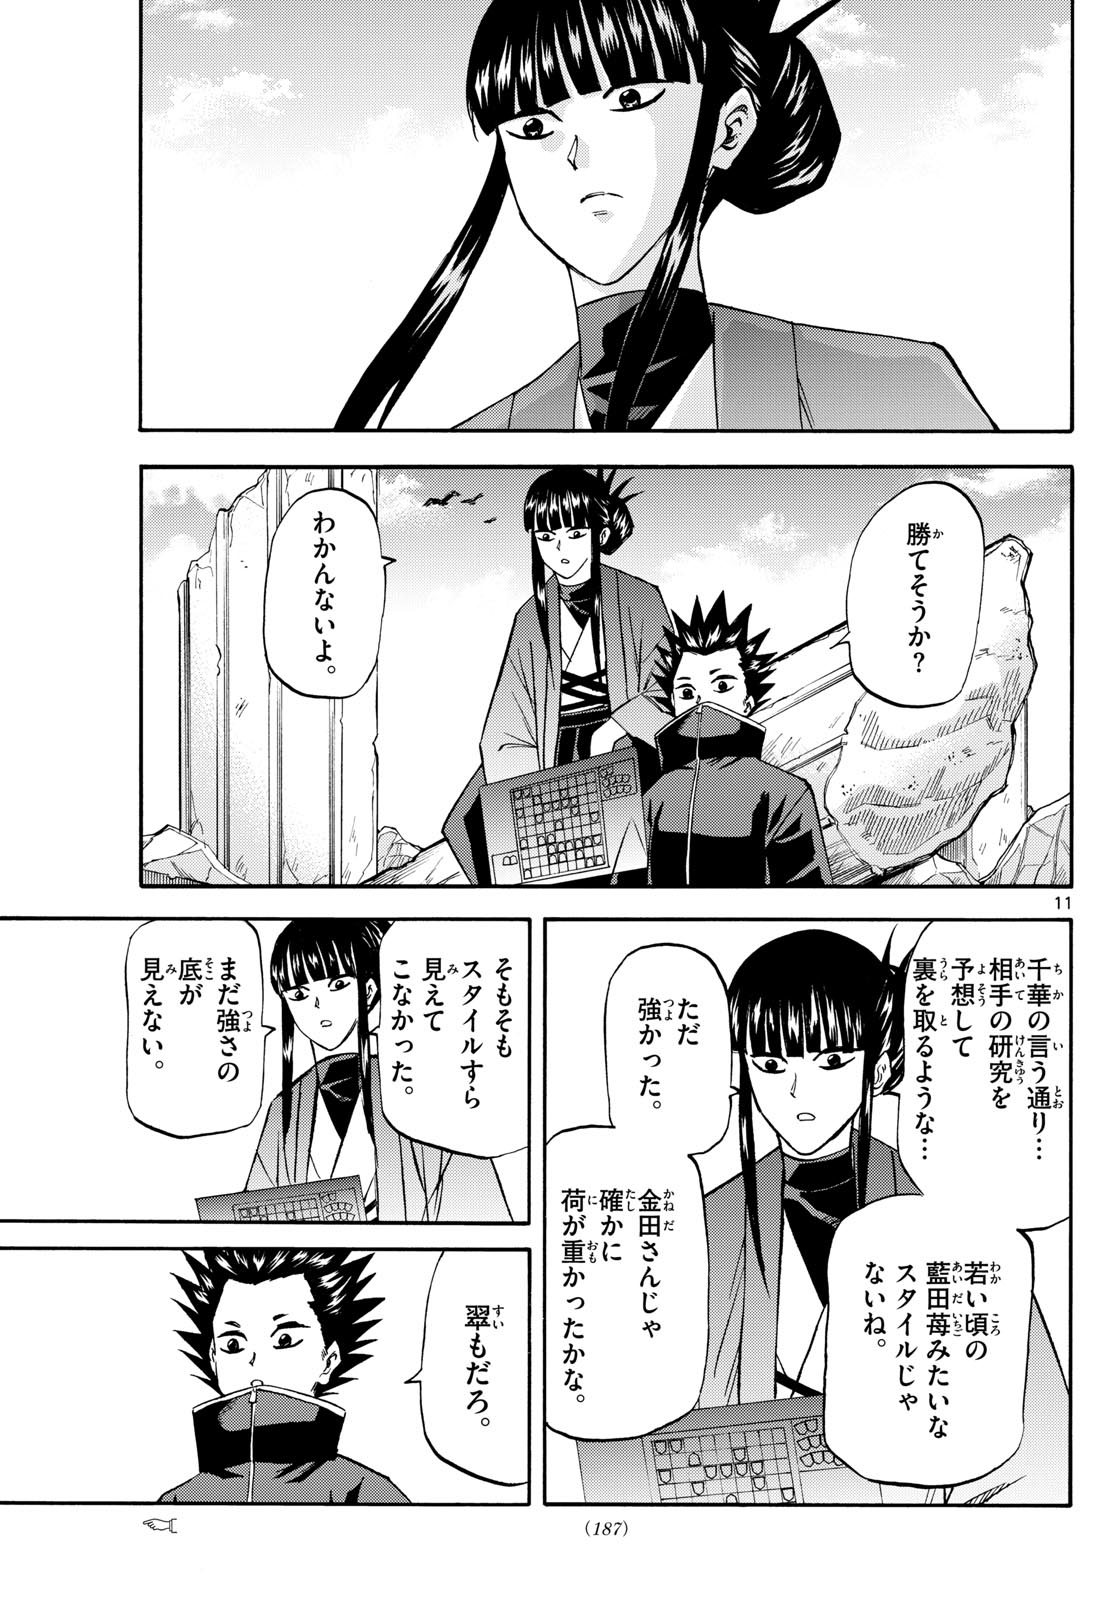 Tatsu to Ichigo - Chapter 192 - Page 11